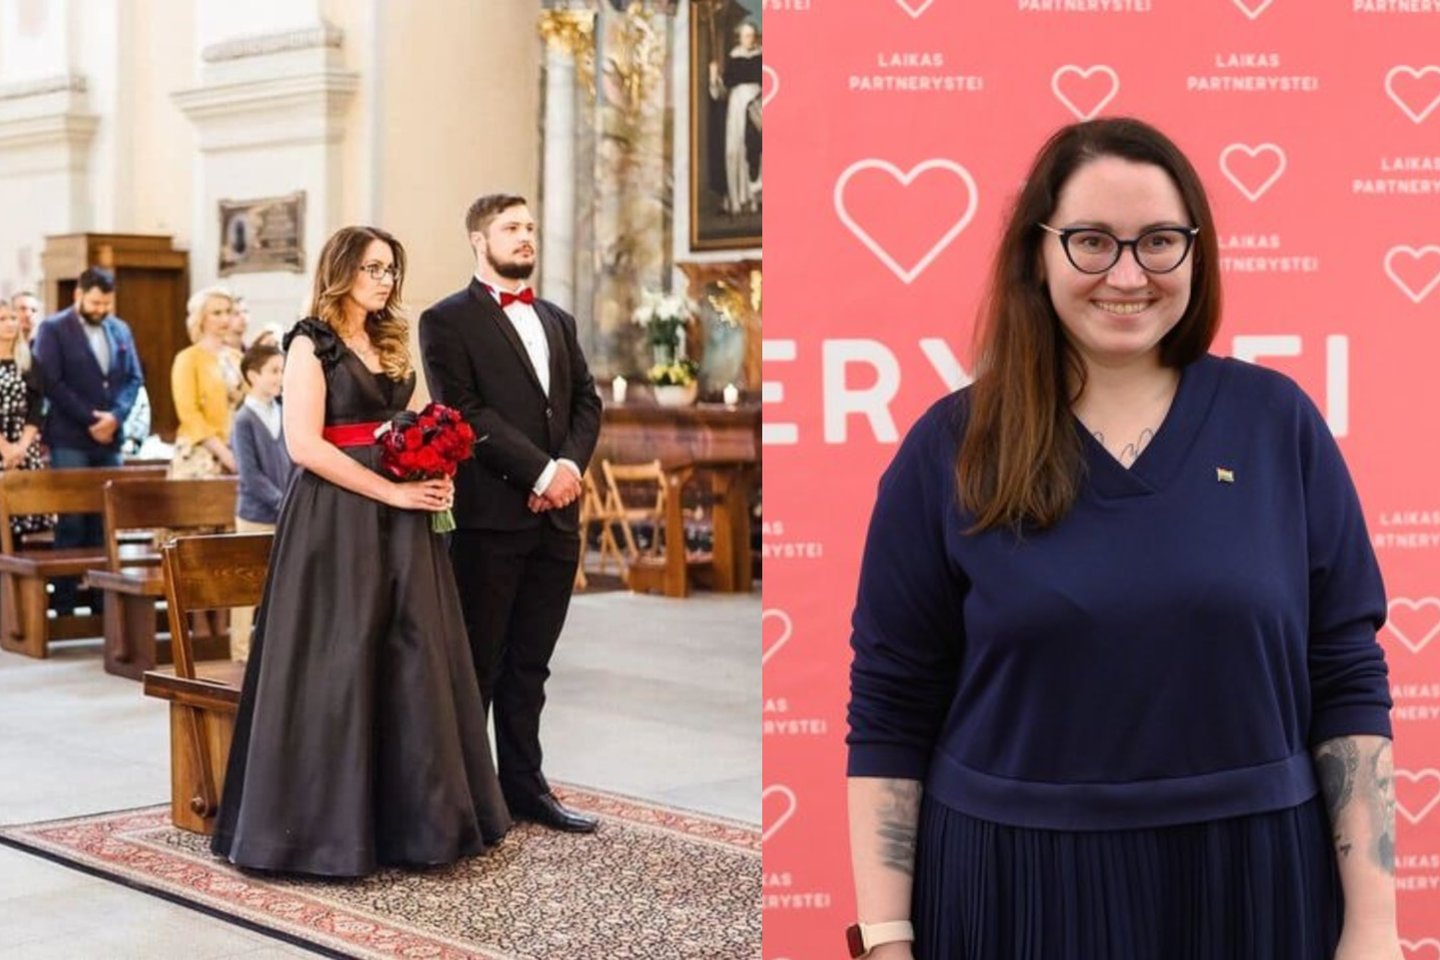 Medines vestuves mininti E. Dobrowolska paviešino vestuvių nuotrauką: akį traukė suknelė<br> lrytas.lt koliažas.